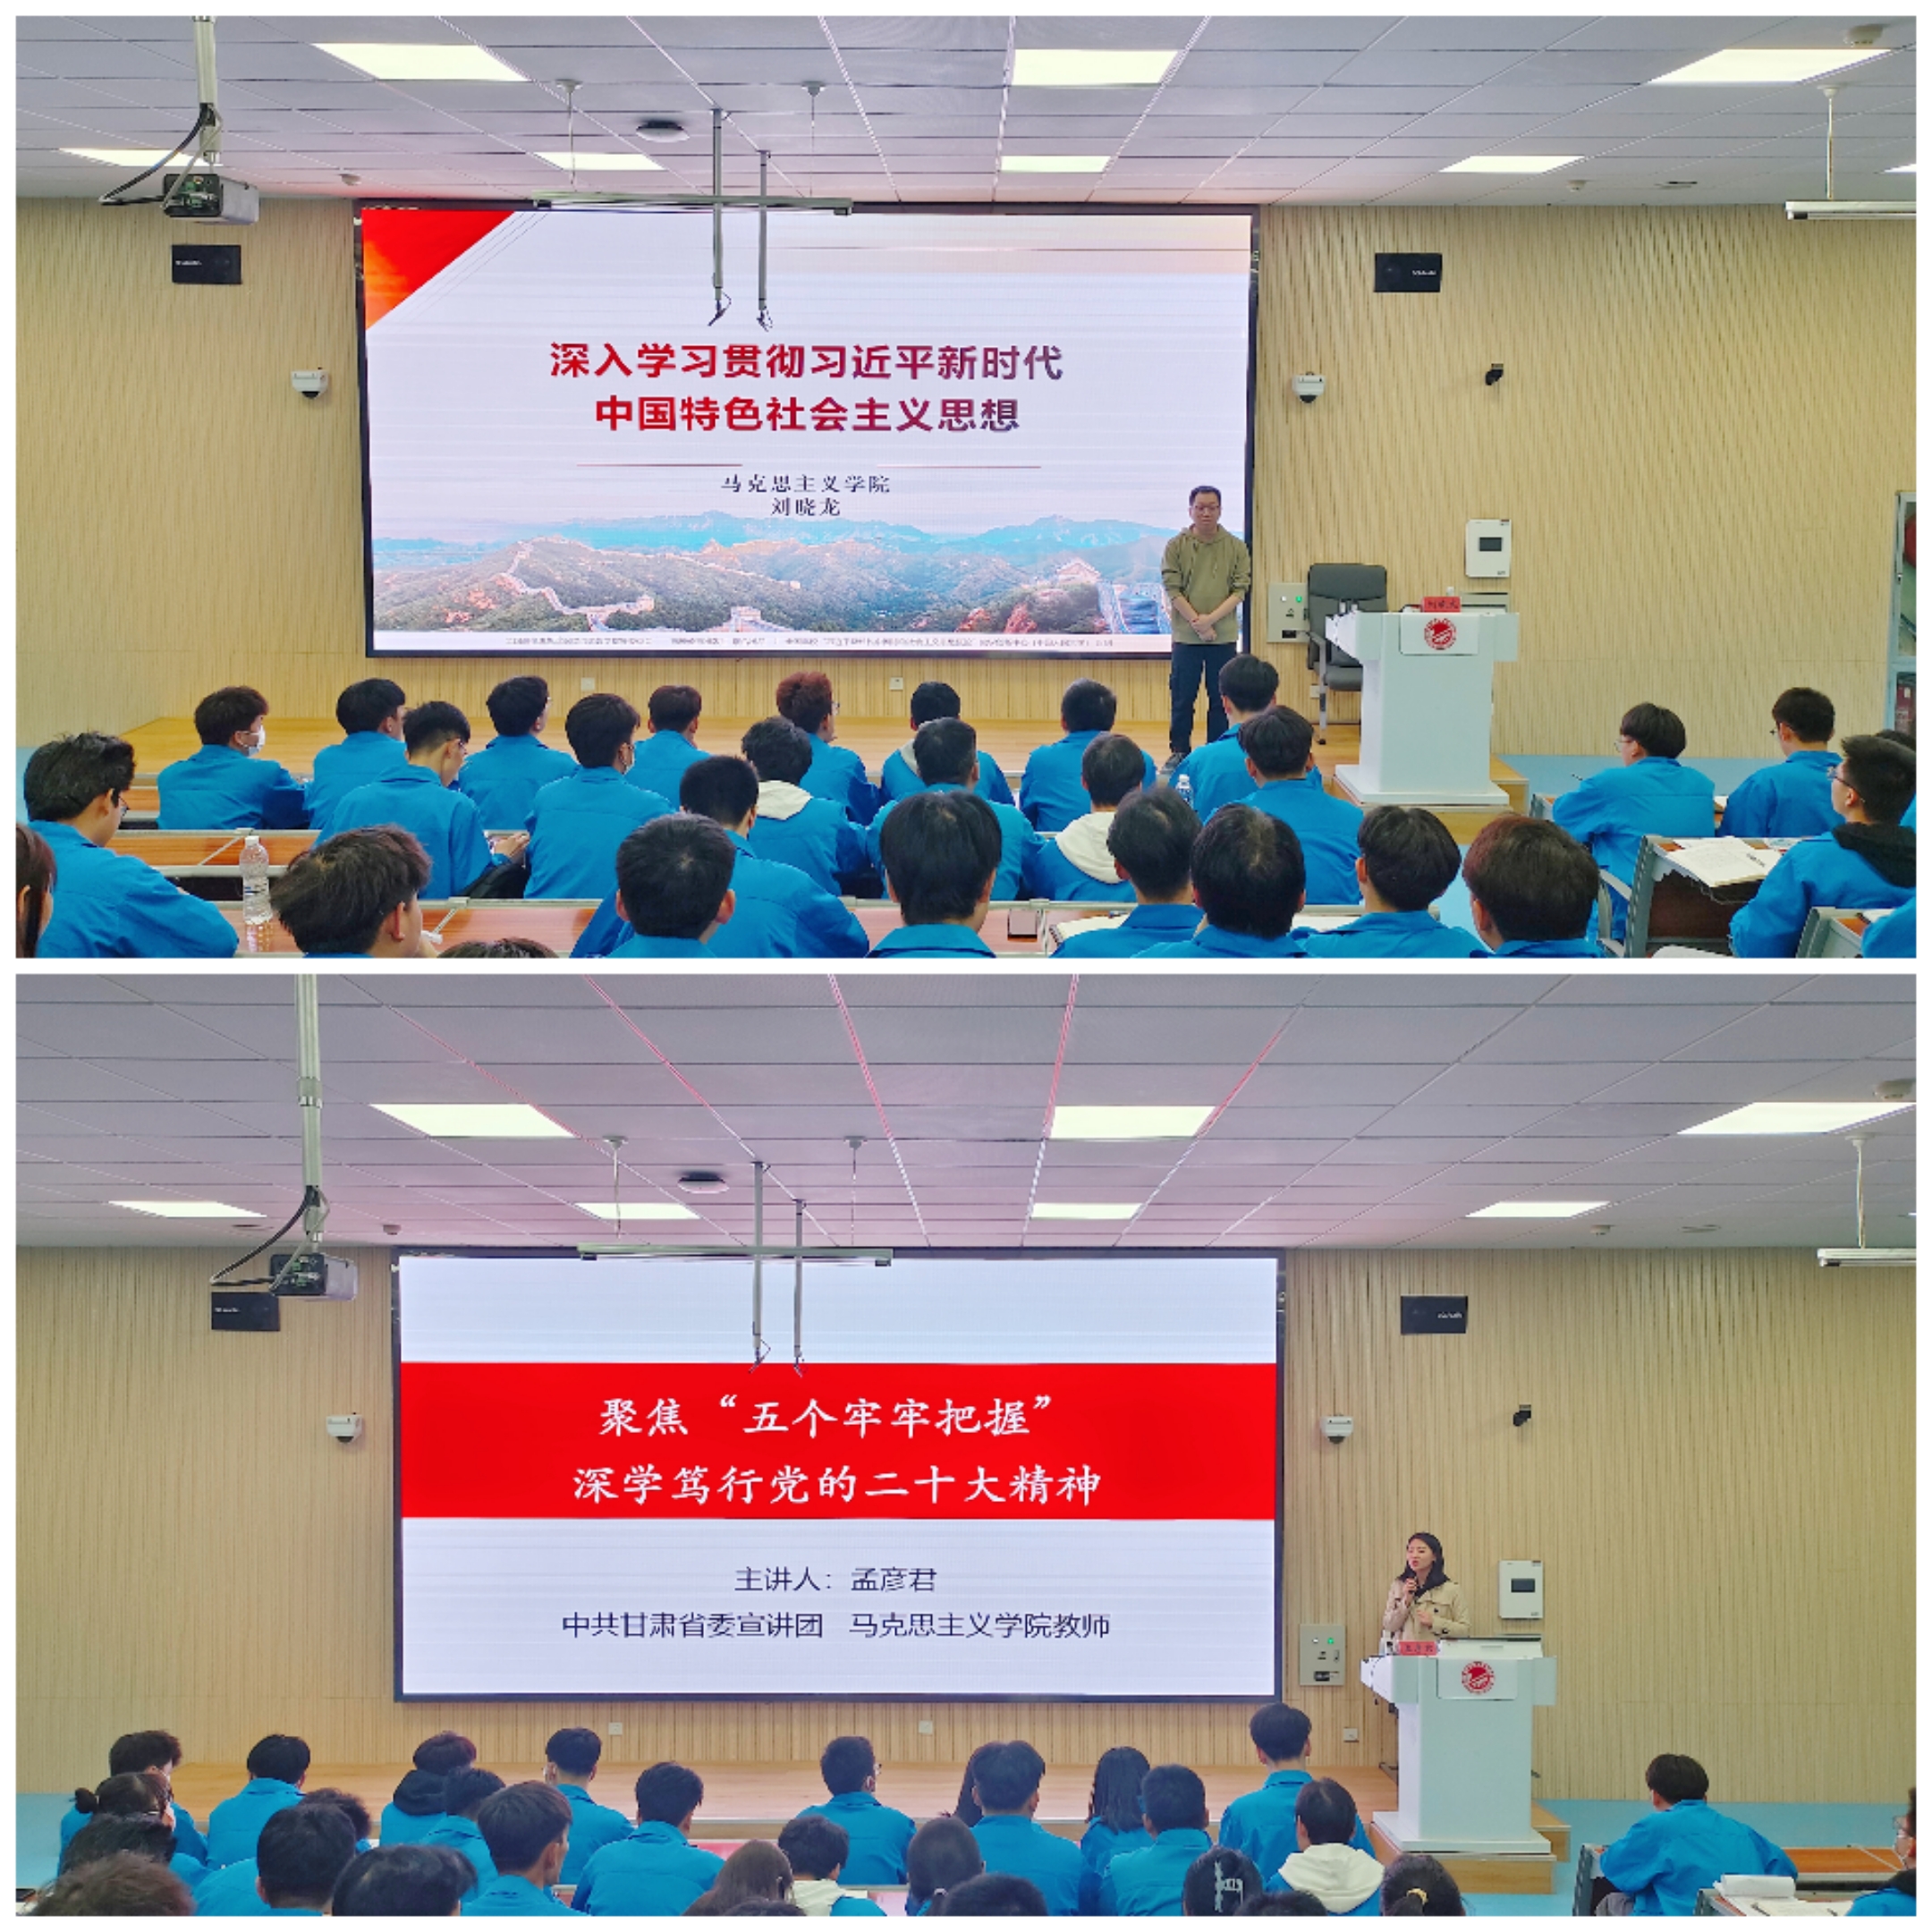 2特邀马克思主义学院刘晓龙老师和孟彦君老师为学员们进行党课培训和辅导.jpg